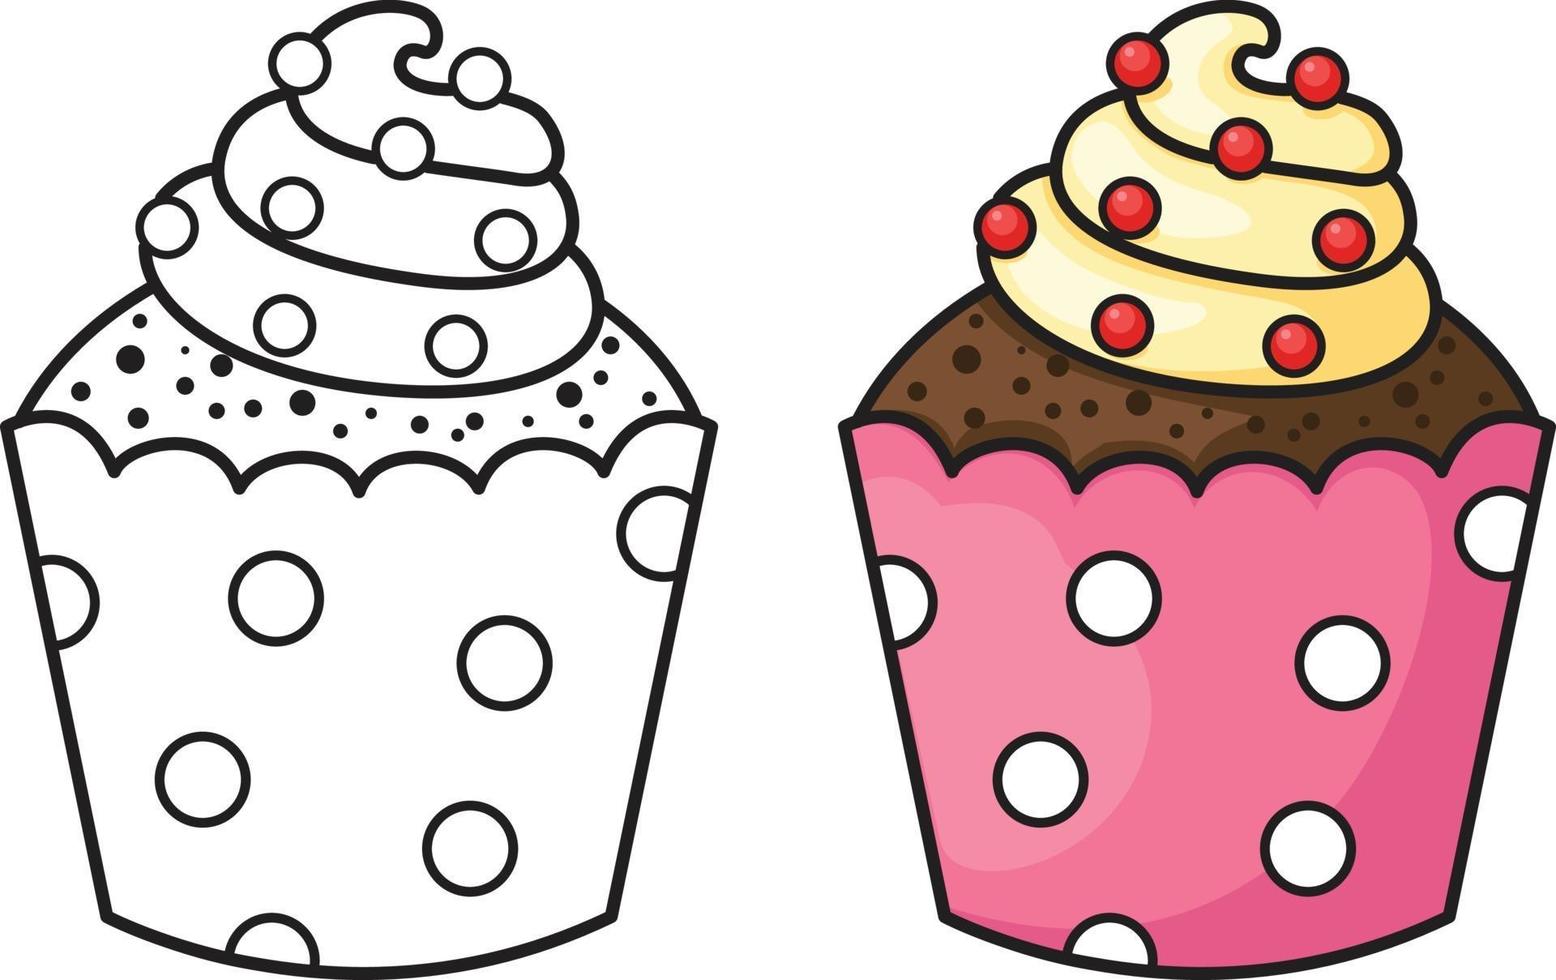 due cupcake vector